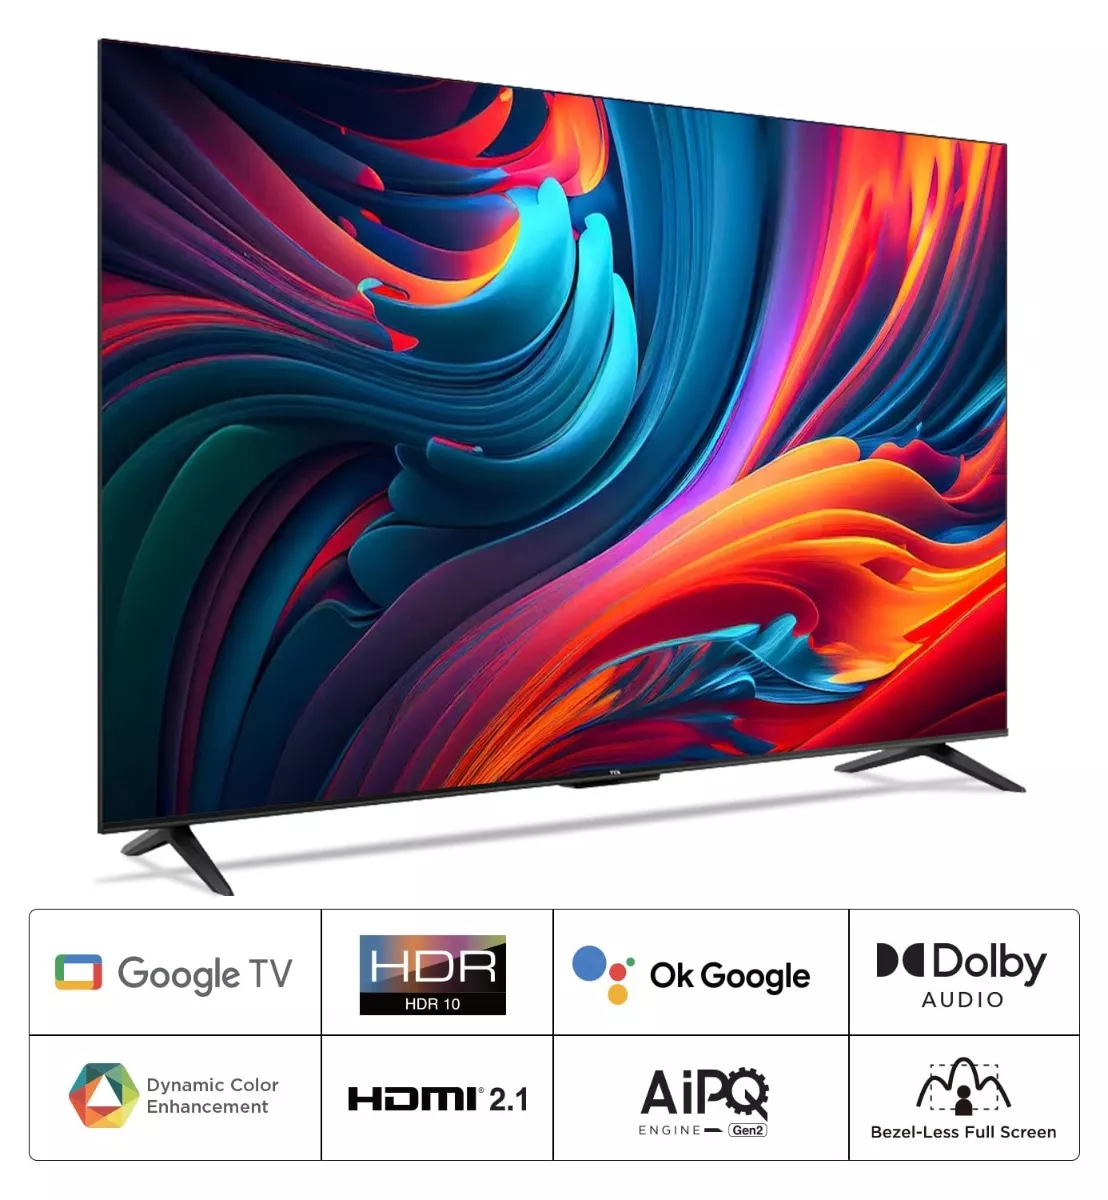 139 cm (55 inches) 4K Ultra HD Smart LED Google TV TH-55MX660DX (Black, 4K  Studio Color Engine, HDR 10+, Dolby Digital, Chromecast Built-In)